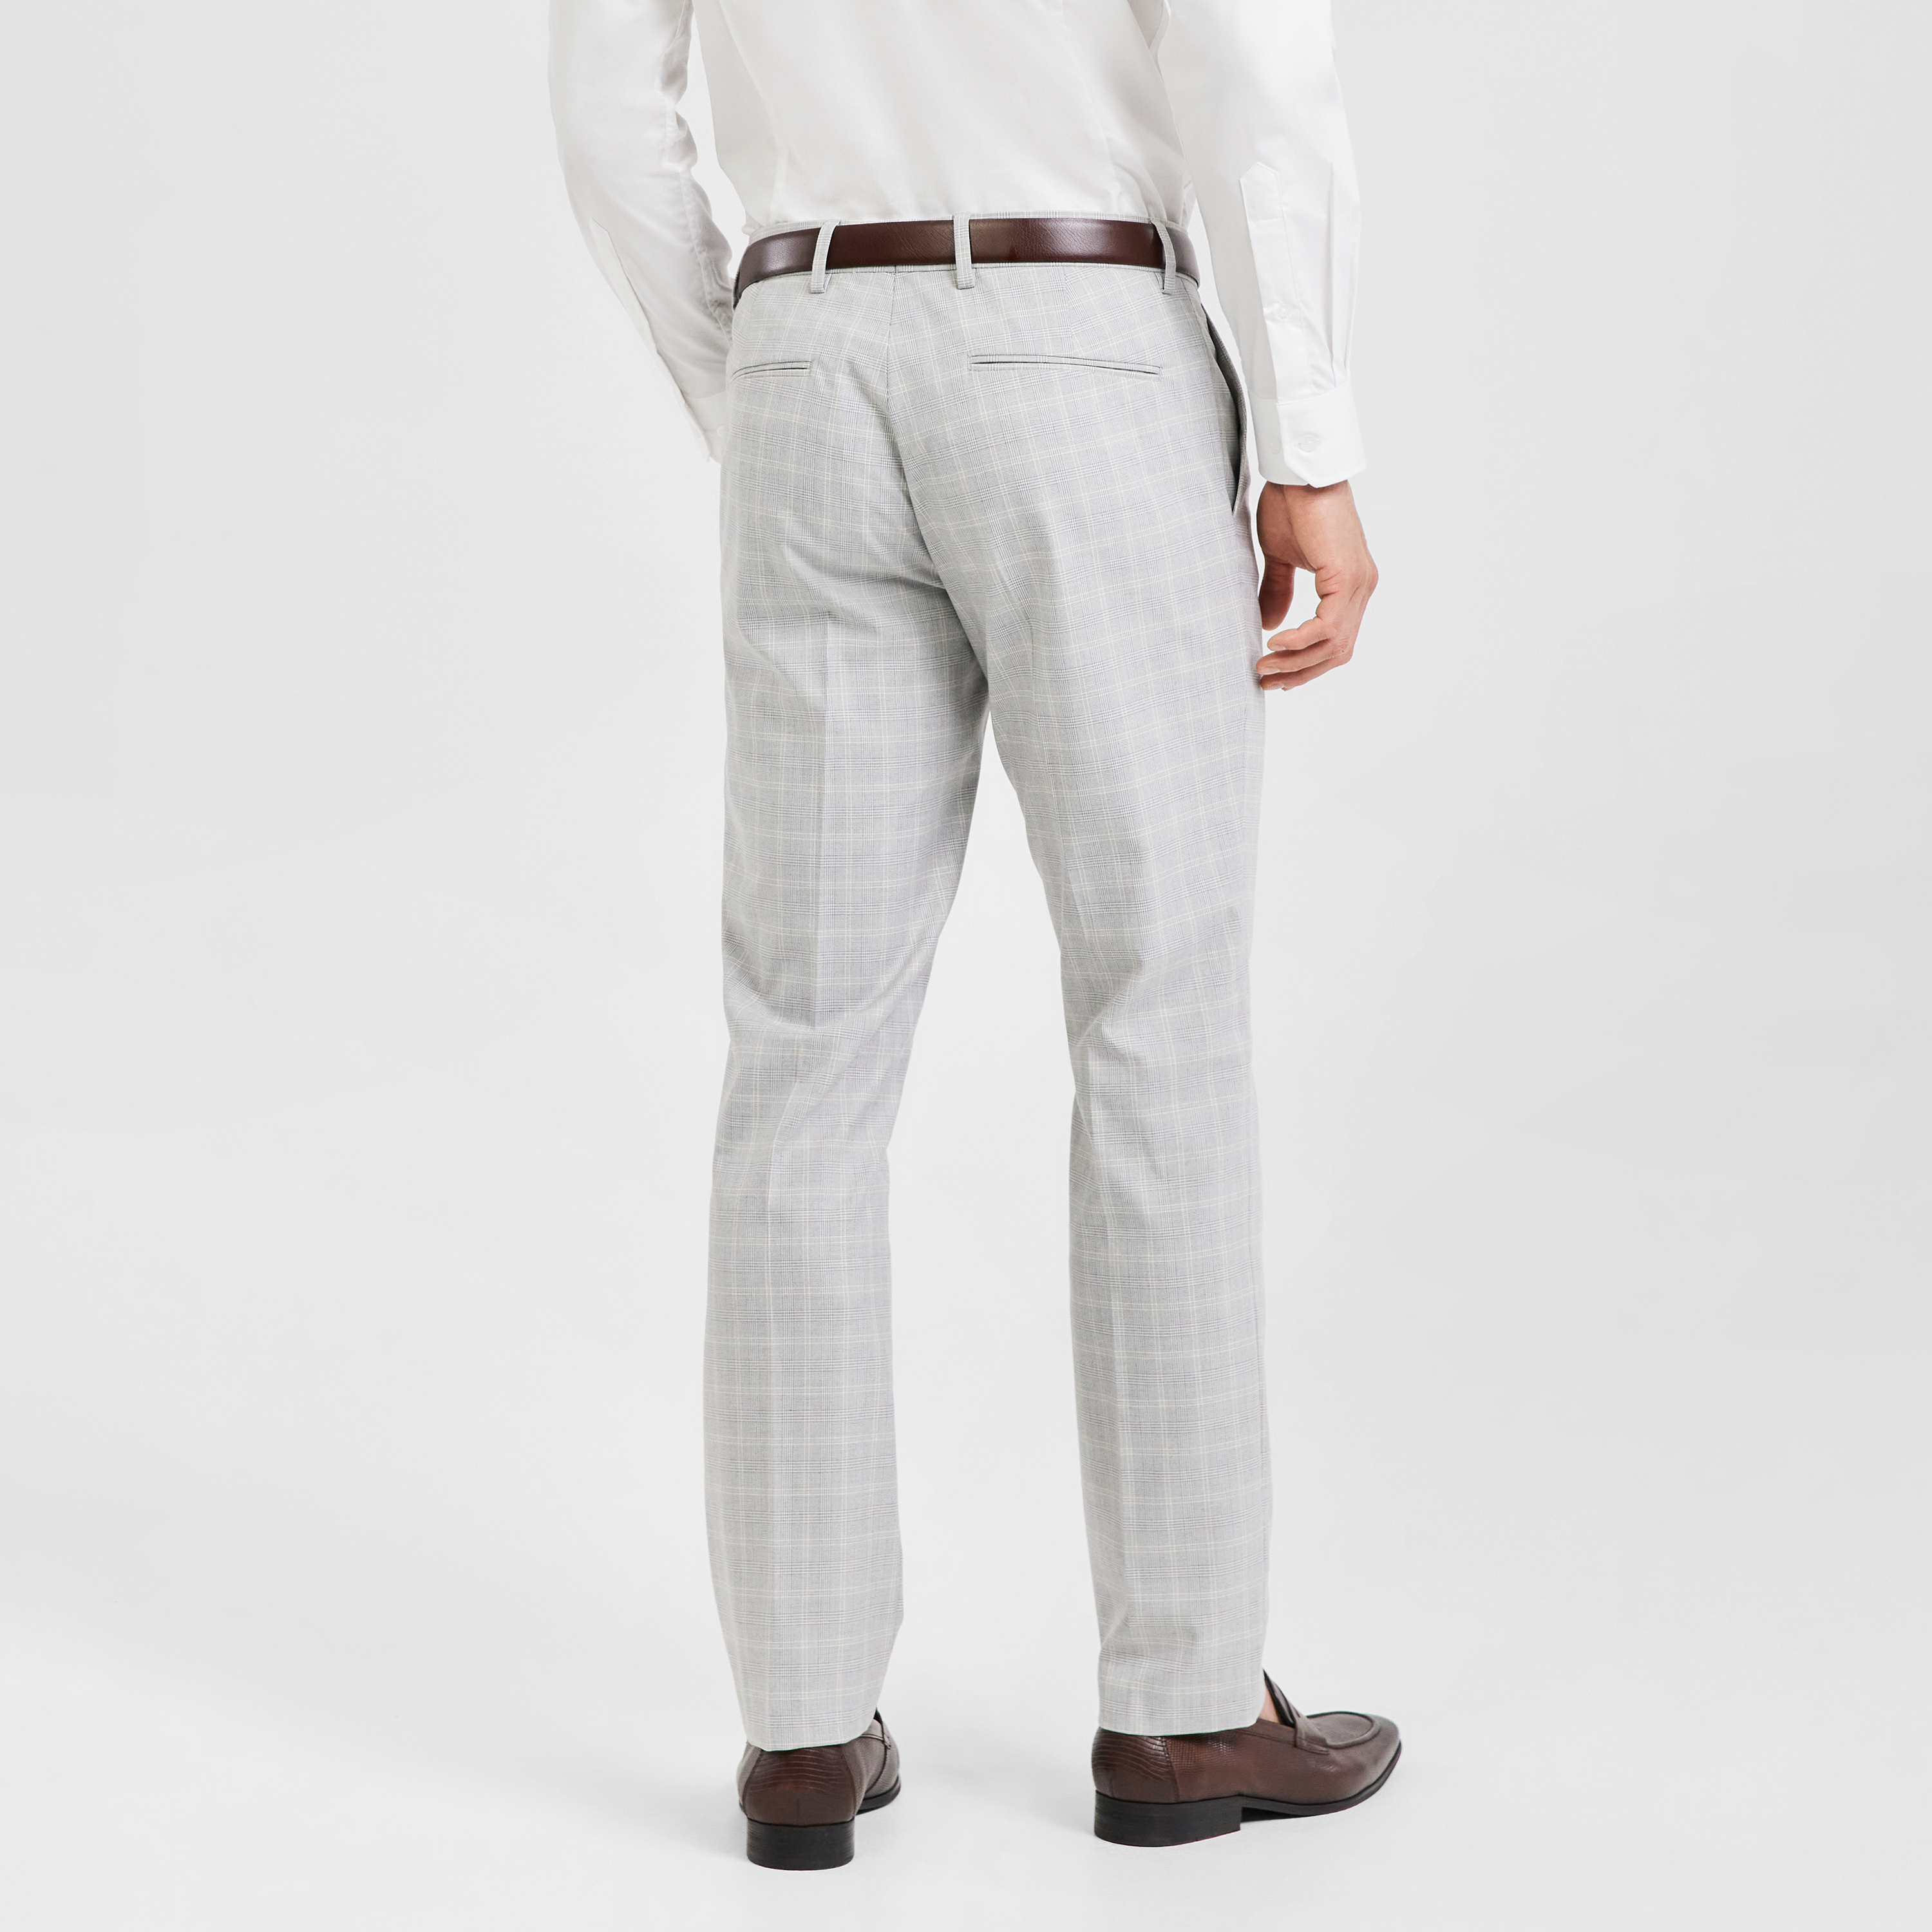 Buy Trousers Pants Fashion Men Dress Pants Casual Slim Plaid Pencil Pants  Male Business Suit Pant Wedding Check Trousers 30 Khaki Online at  desertcartParaguay